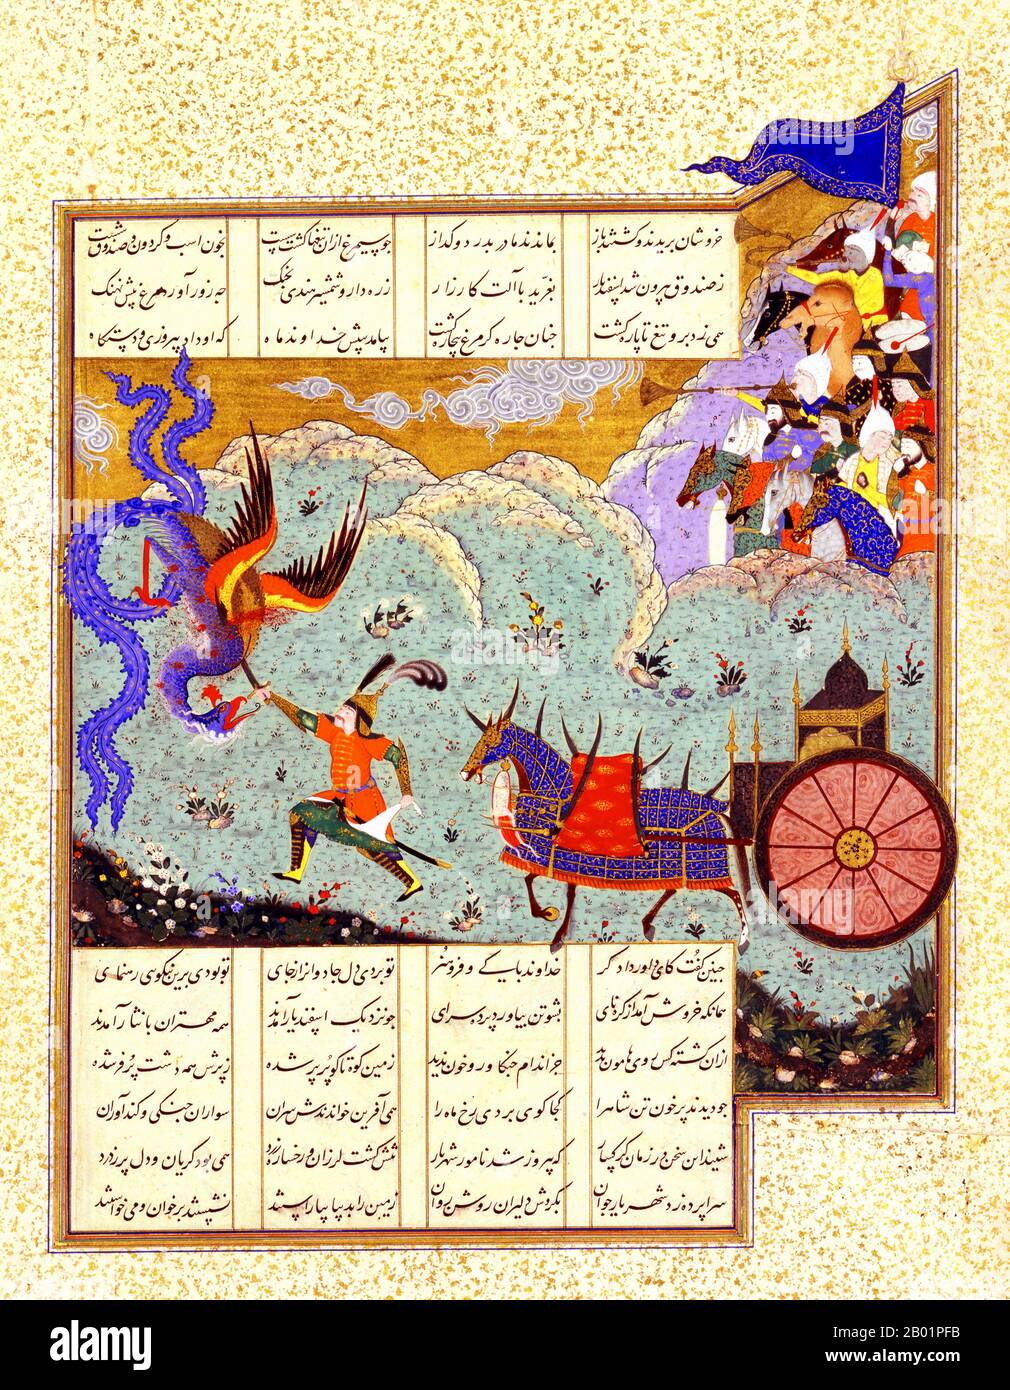 Iran/Perse : 'la cinquième épreuve d'Isfandiyar'. Peinture miniature du Shahnameh (Livre des Rois) de Shah Tahmasp, ca. 1525-1535. Isfandiyar, fils de Gushtasp (le 5e roi Kayanian), combat Simurgh l'oiseau fantastique. Le Shahnameh ou Shah-nama est un énorme opus poétique écrit par le poète persan Ferdowsi vers 1000 EC et est l'épopée nationale de la sphère culturelle de la Grande Perse. Composé de quelque 60 000 versets, le Shahnameh raconte le passé mythique et historique du (Grand) Iran depuis la création du monde jusqu’à la conquête islamique de la Perse au 7e siècle. Banque D'Images